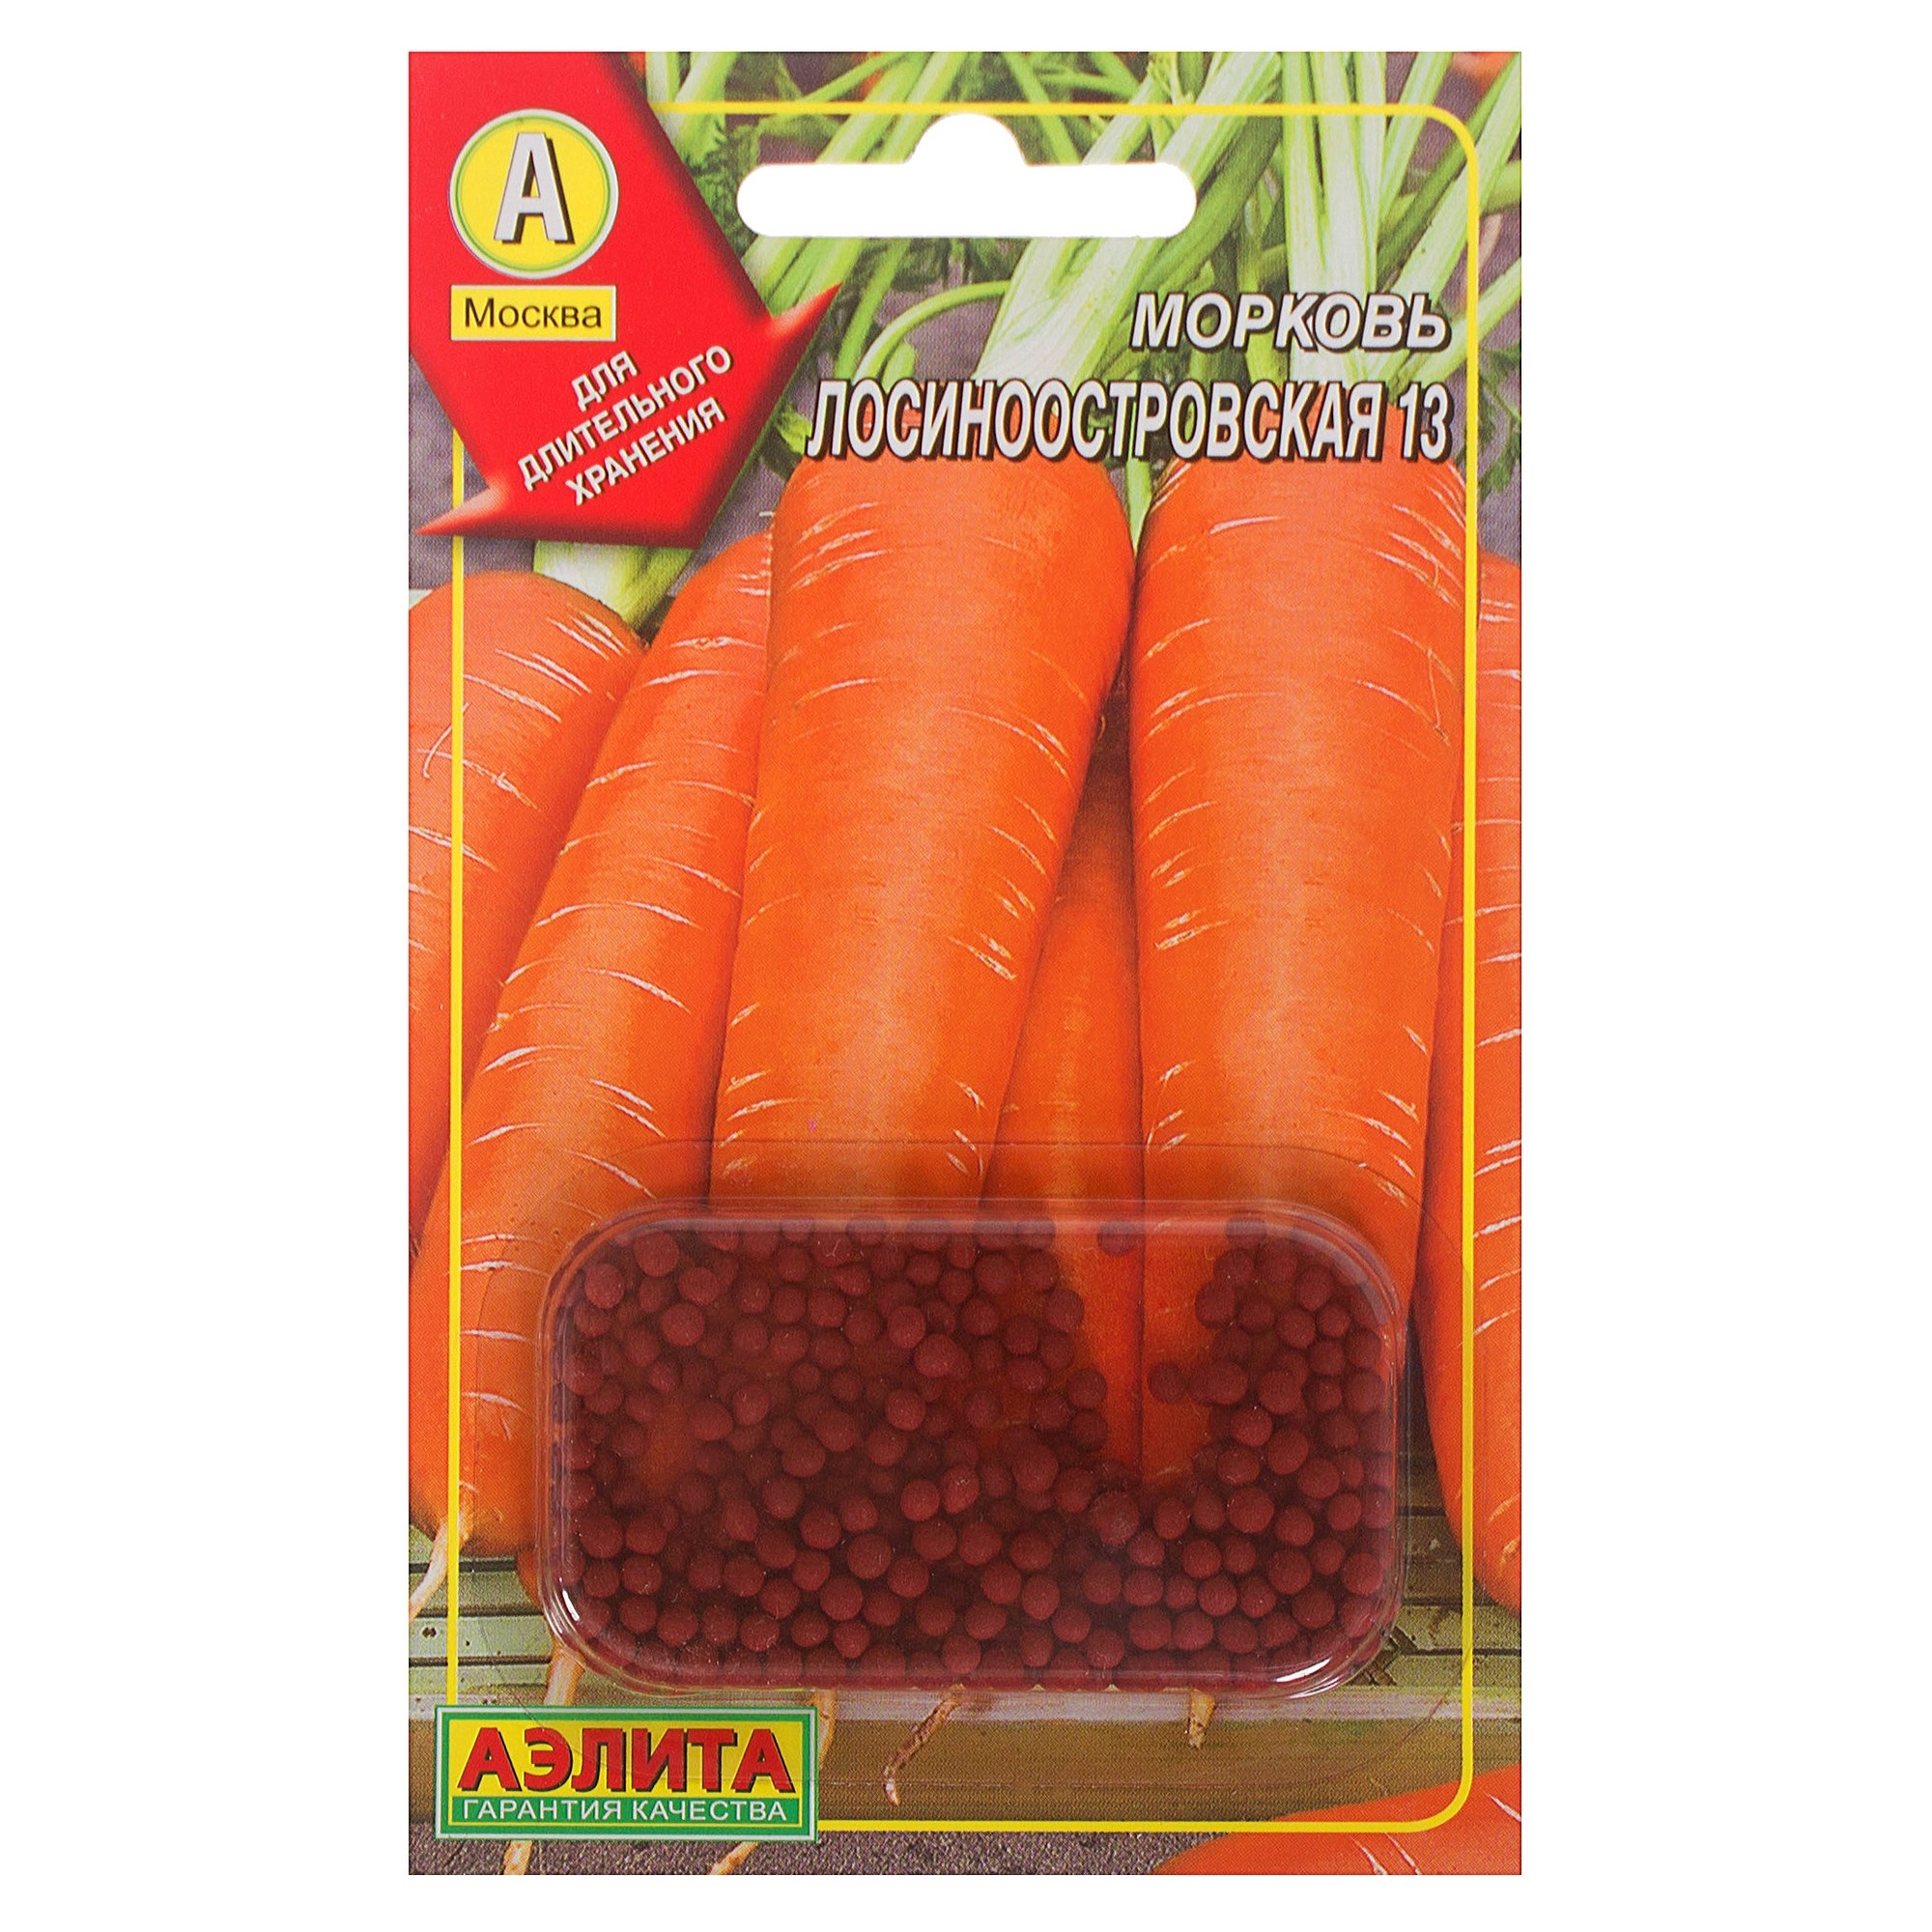 Морковь Лосиноостровская: характеристика и описание сорта, отзывы, фото, достоинства и недостатки, особенности выращивания